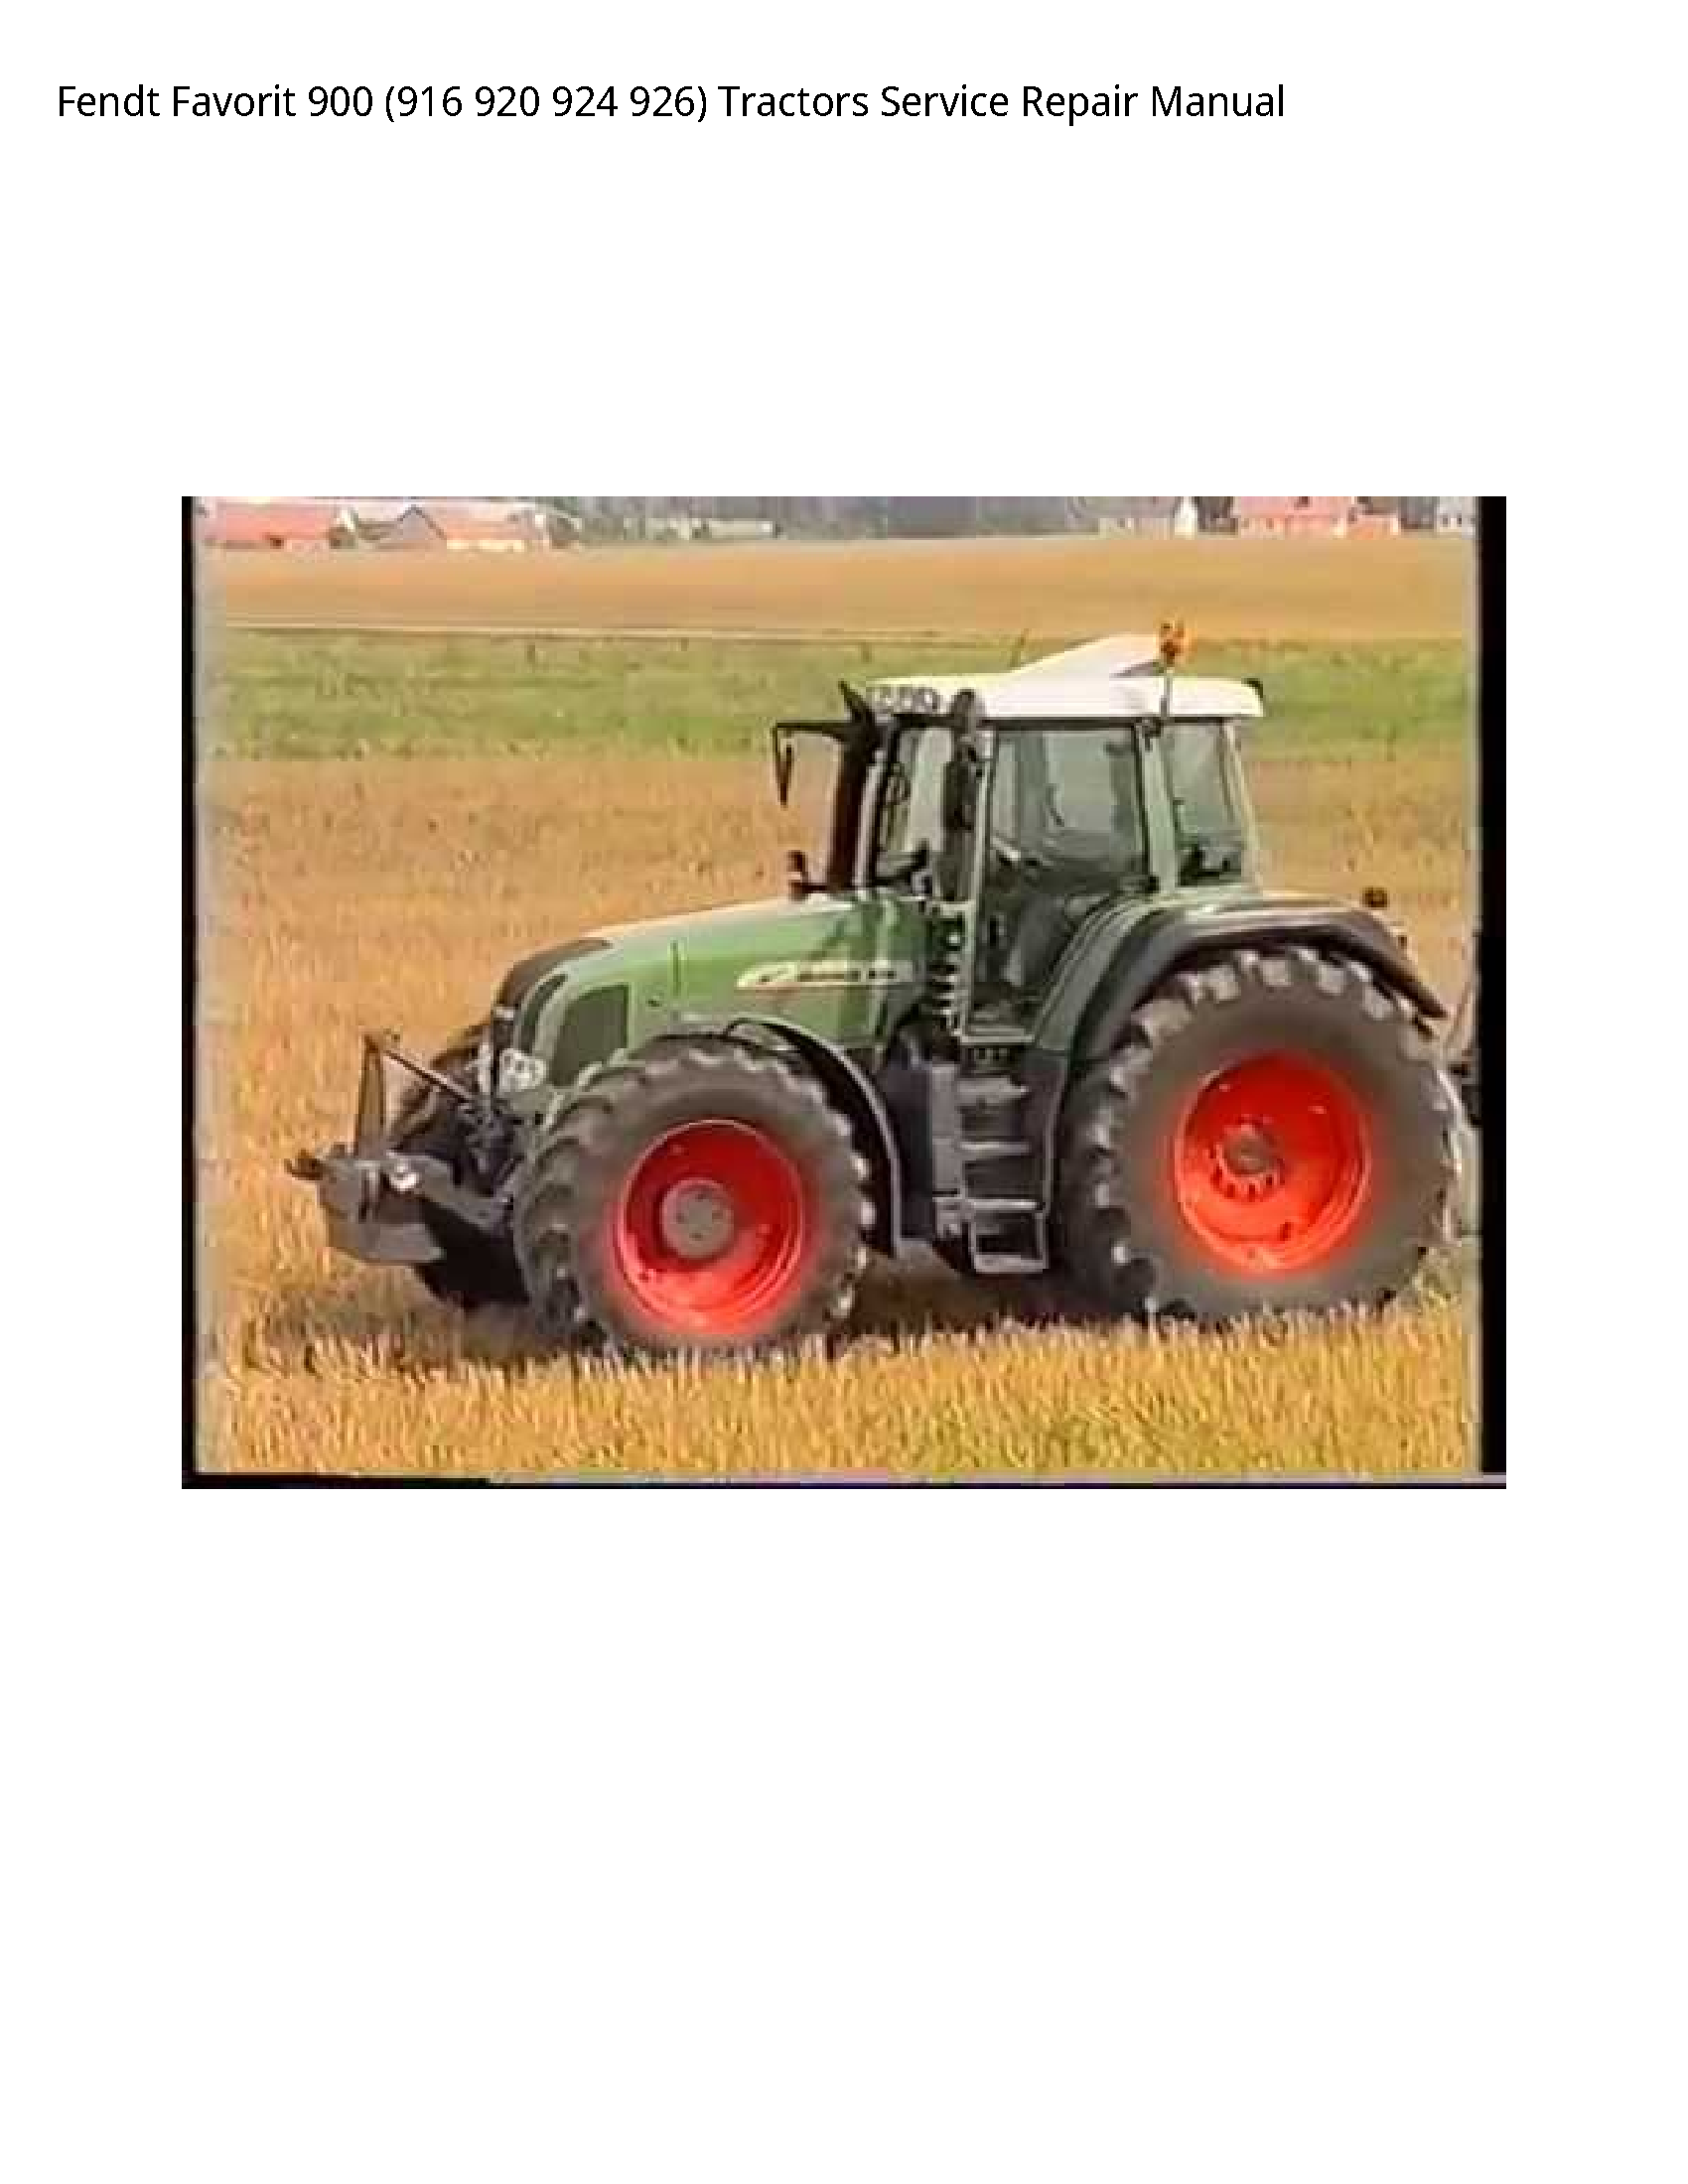 Fendt 900 Favorit Tractors manual